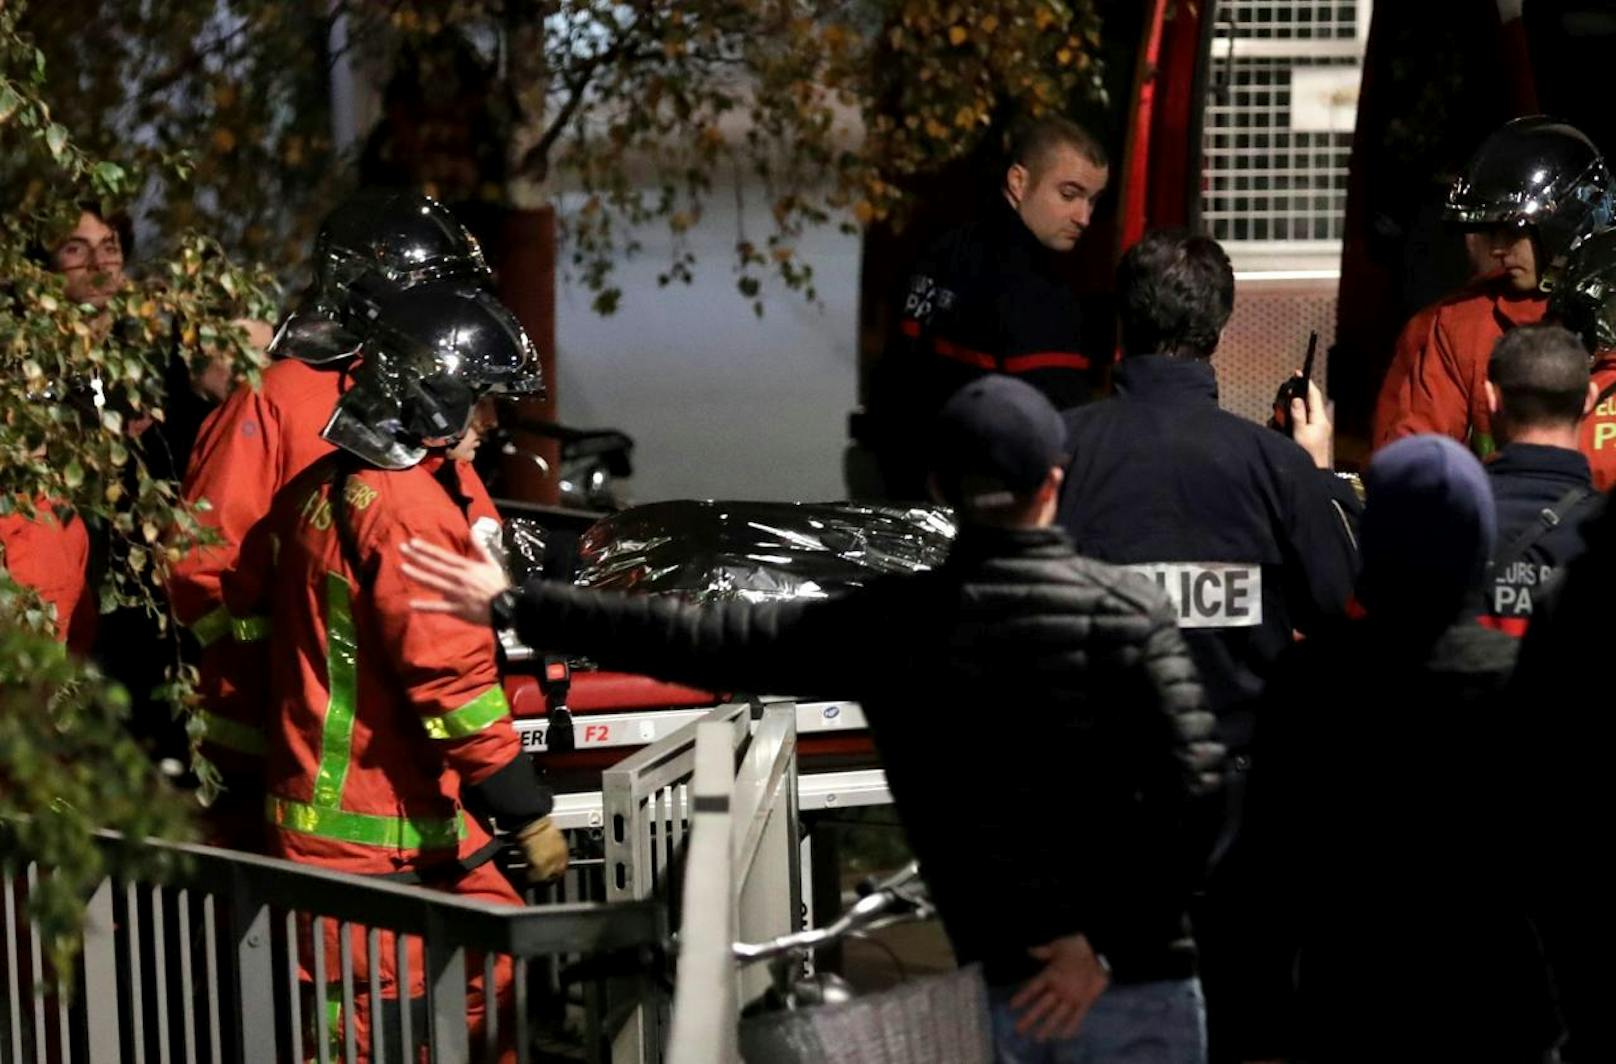 Polizei und Feuerwehr waren am Freitag, 24. November, in einem Großeinsatz auf der Jagd nach einem ausgebüxten Tiger - Mitten in Paris!